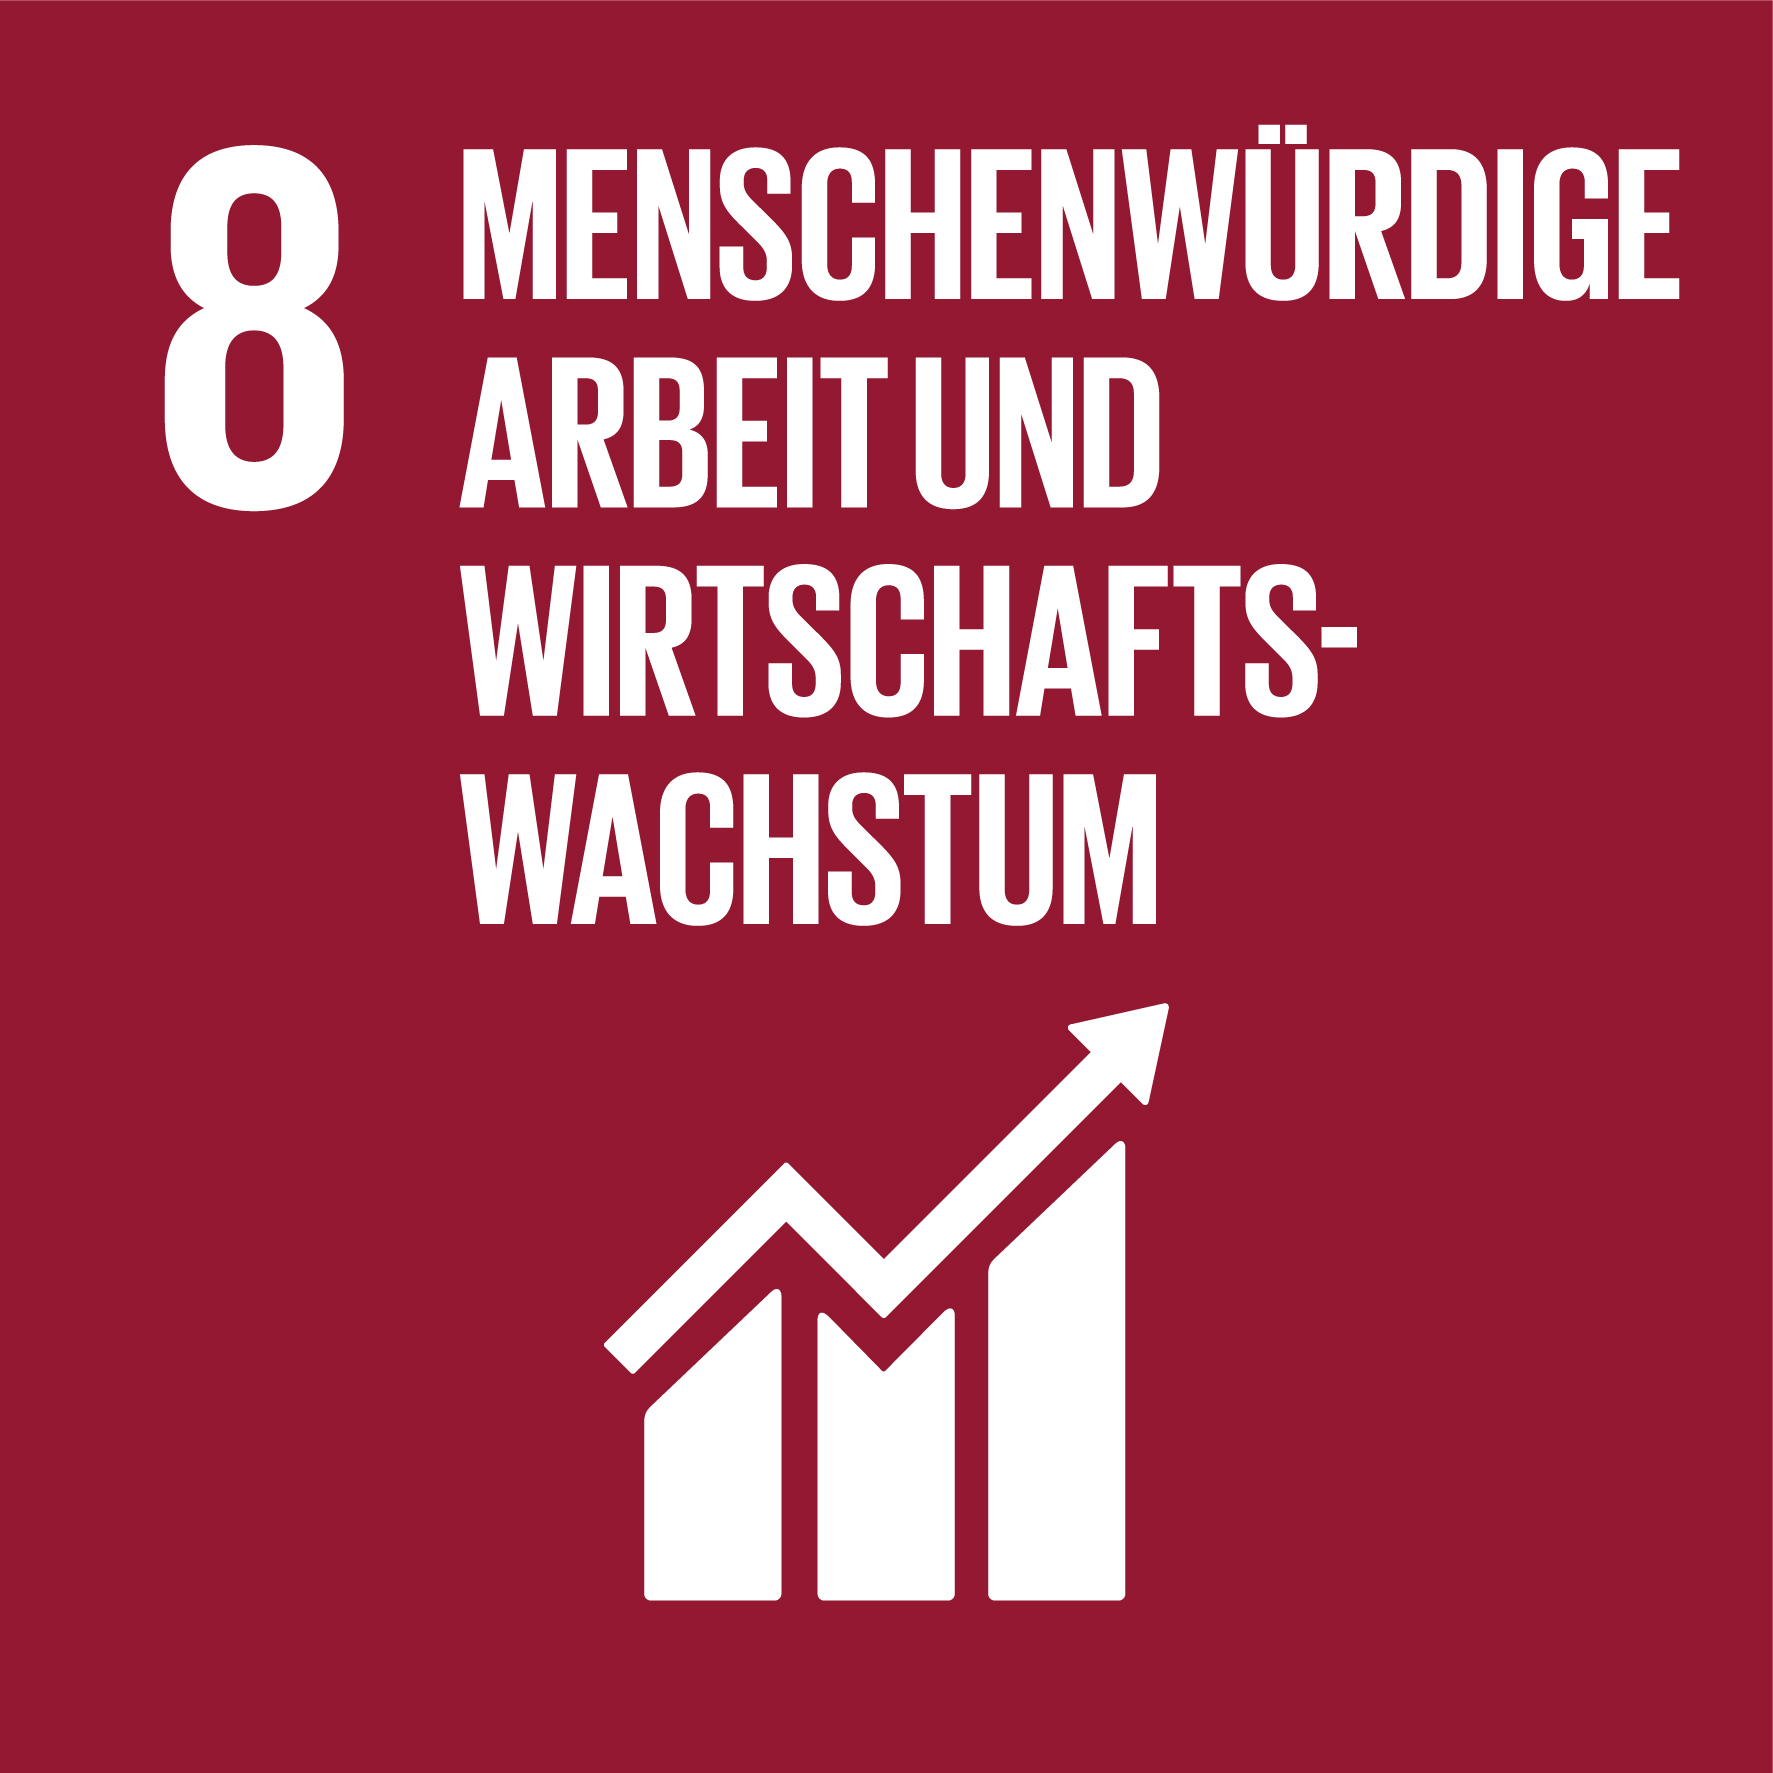 Schaubild von Ziel Nummer 8 der Nachhaltigkeit „Menschenwürdige Arbeit und Wirtschaftswachstum"